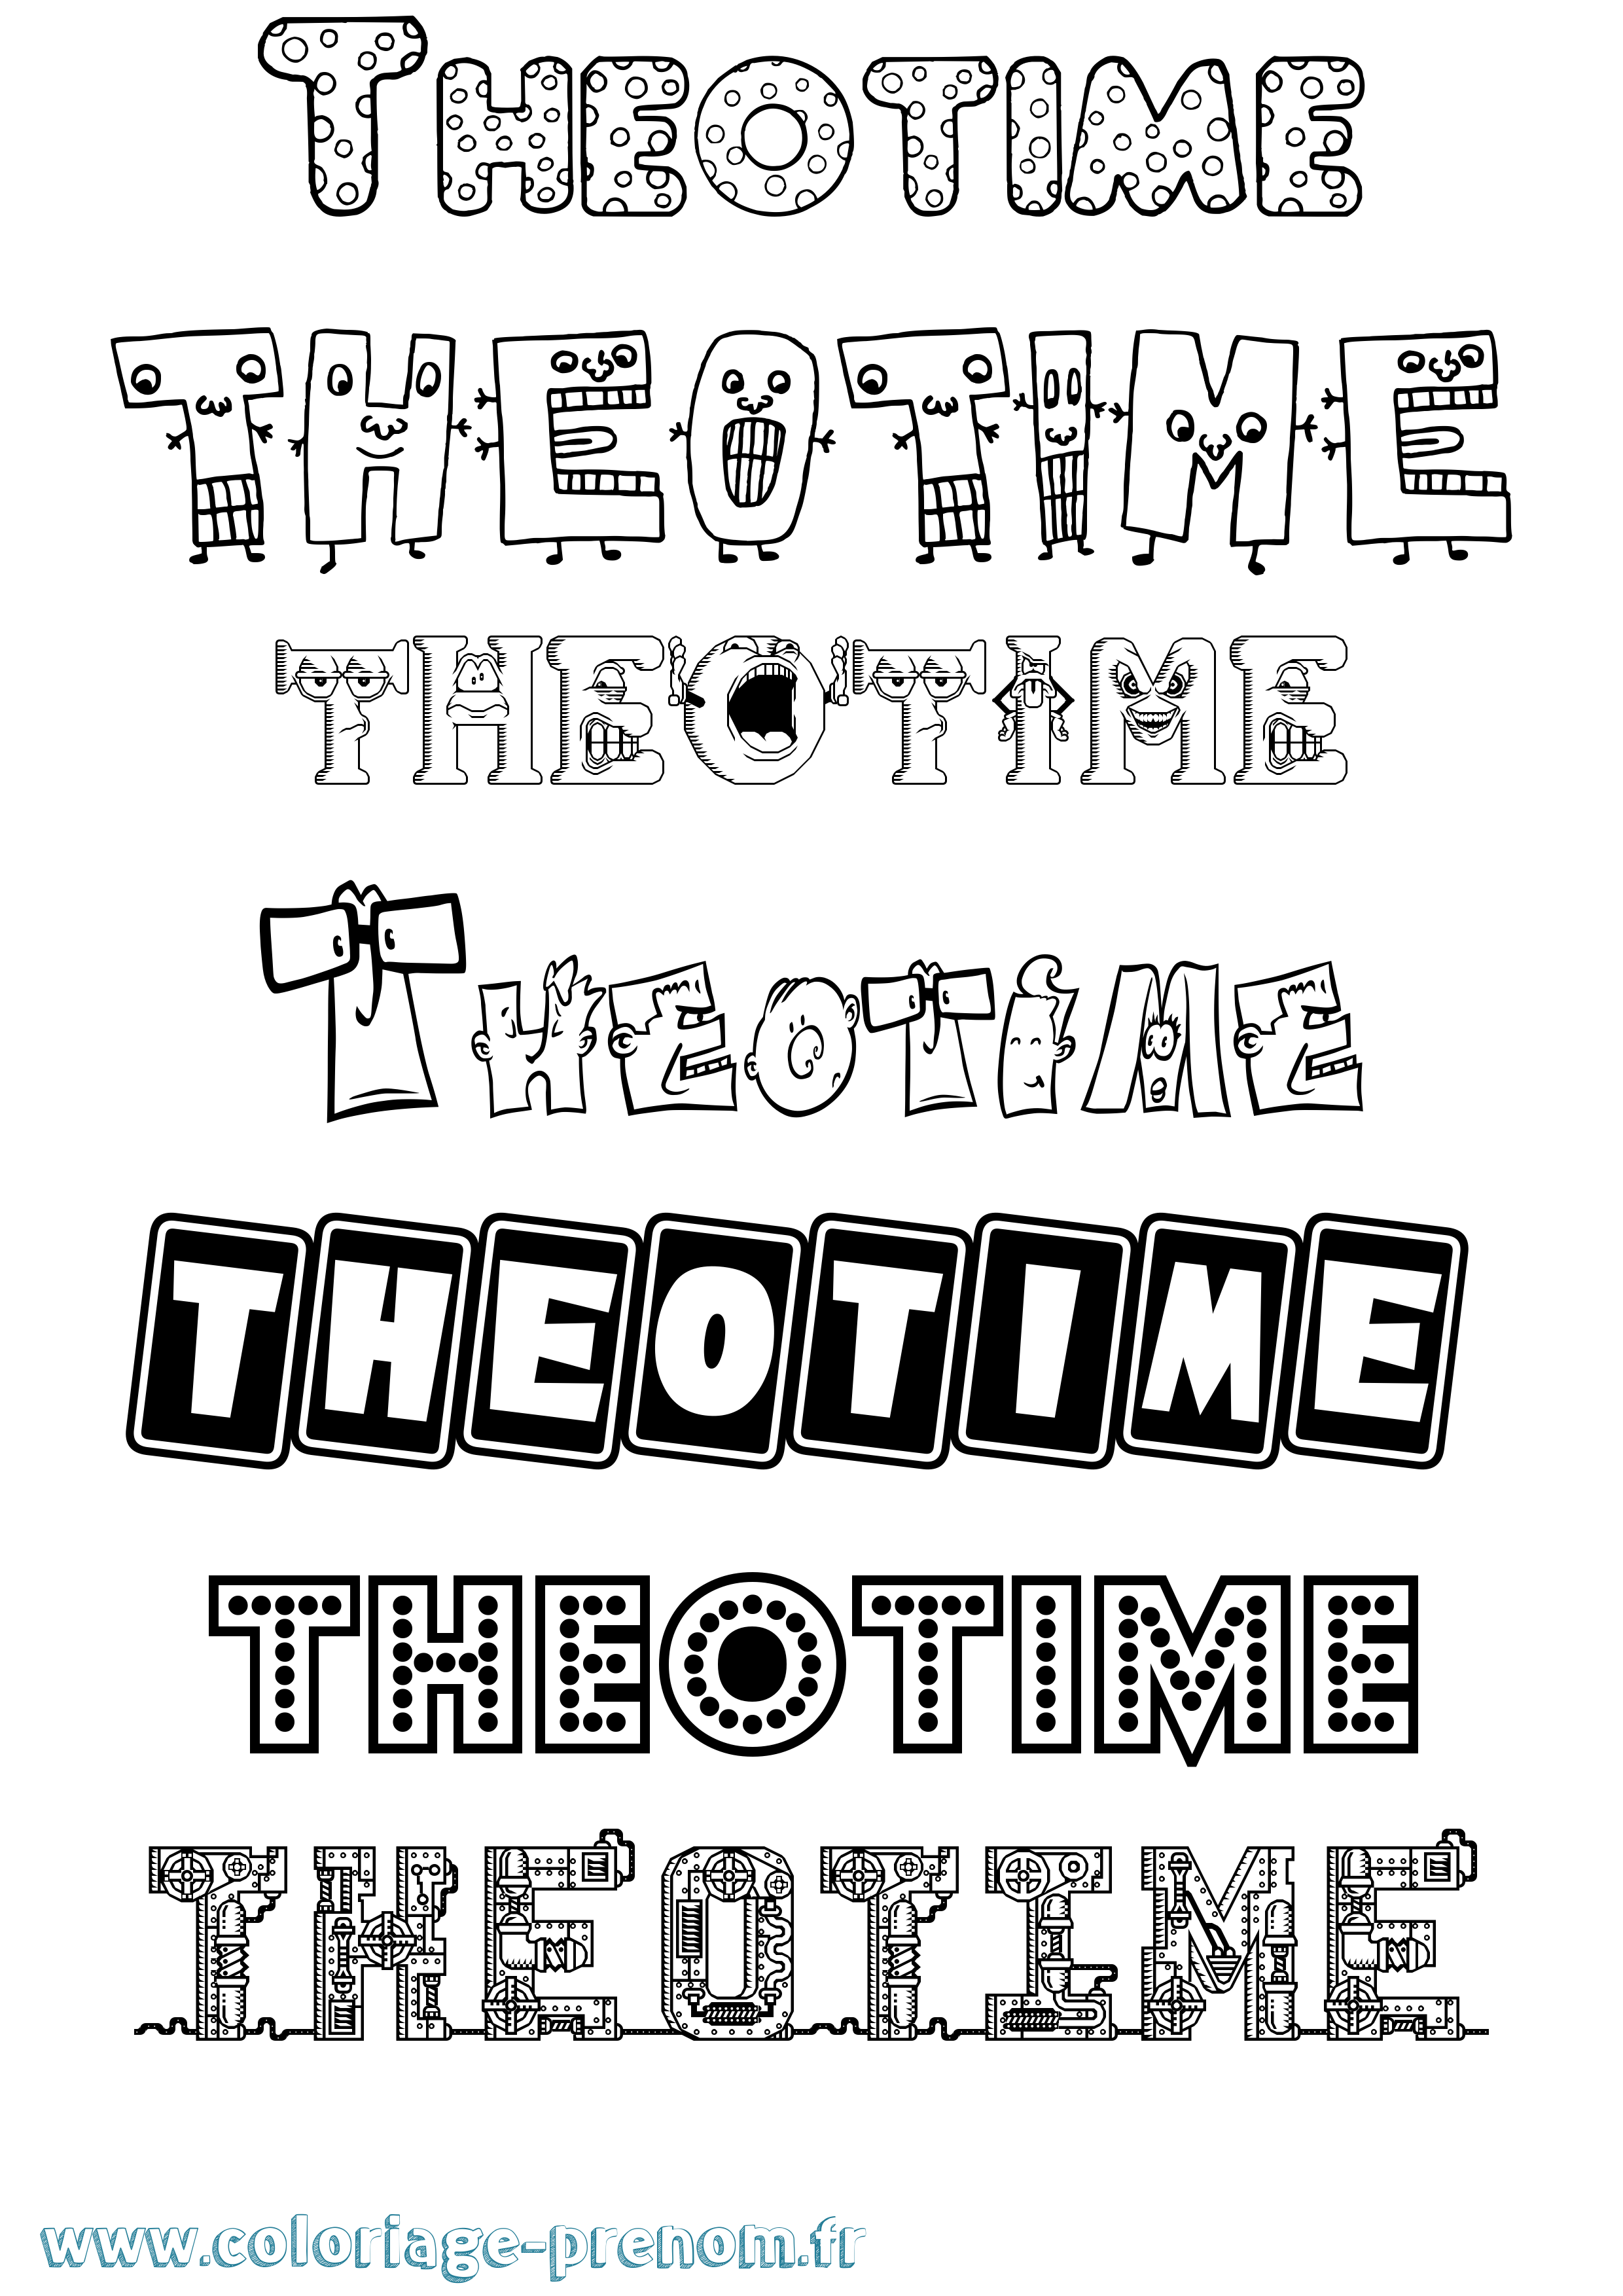 Coloriage prénom Theotime Fun